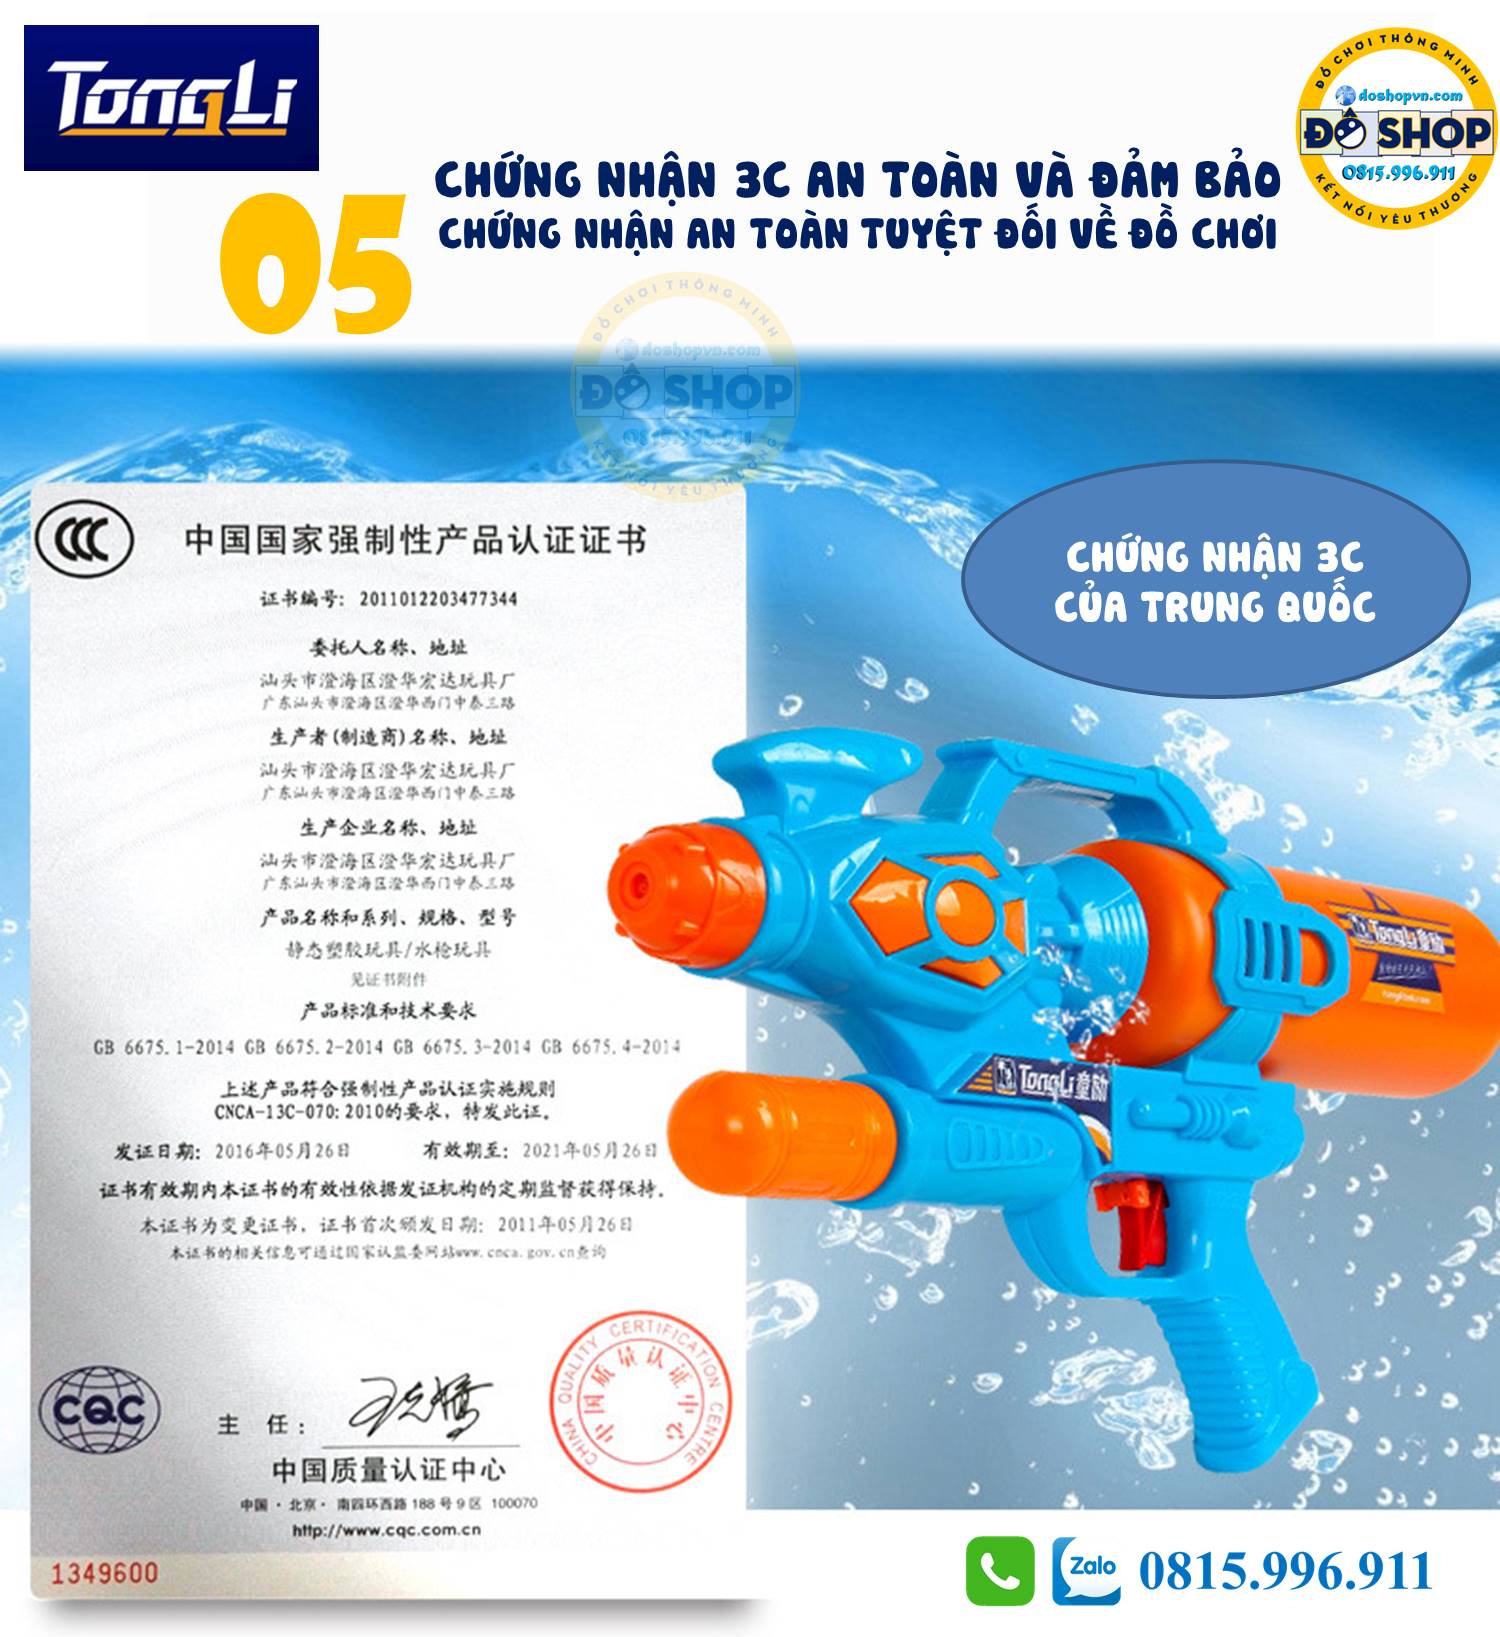 Súng nước Tong Li TL25 được cấp chứng chỉ an toàn 3C